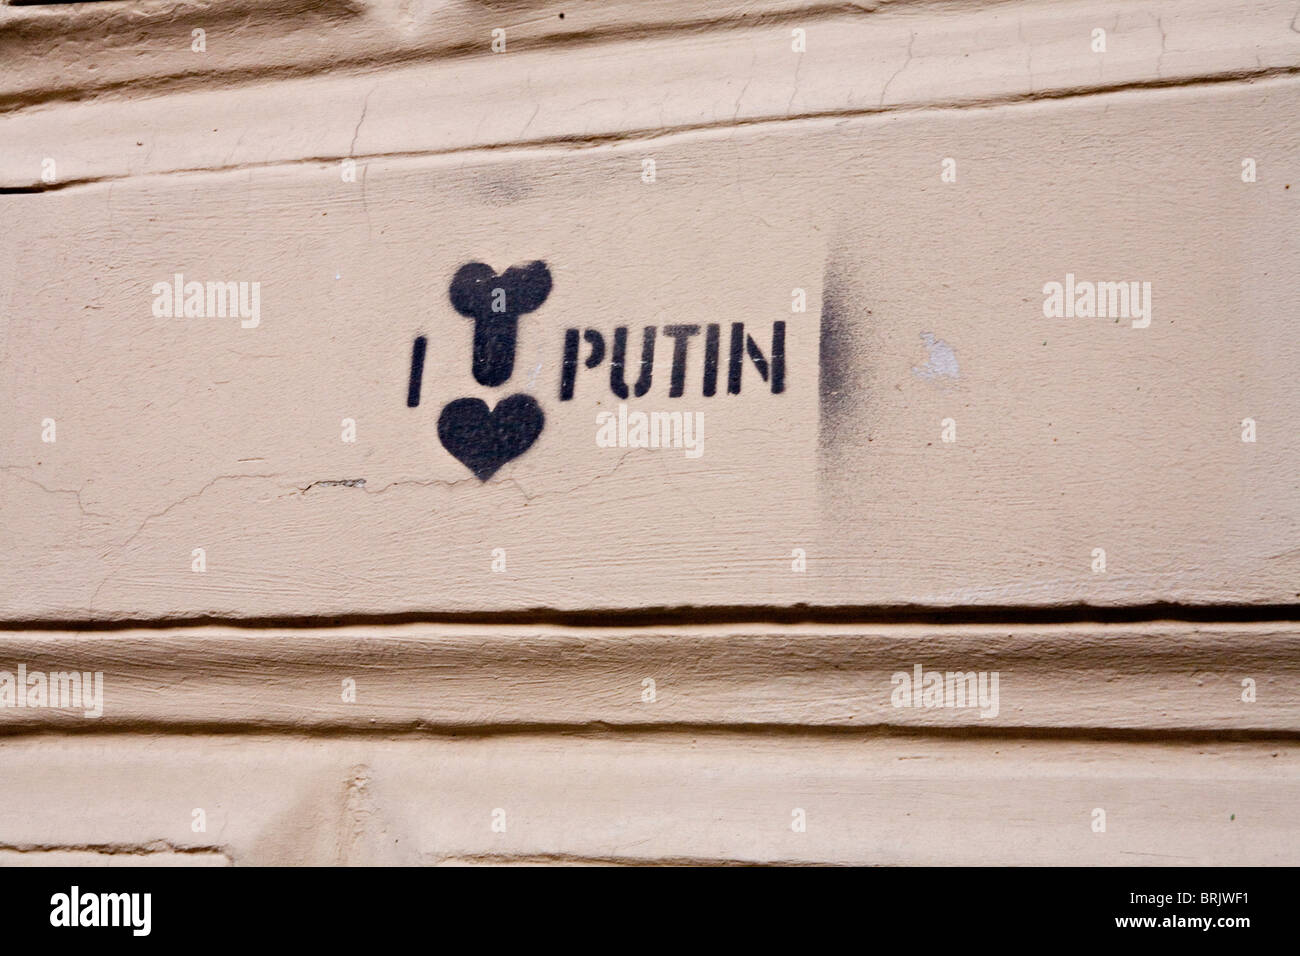 'I love Putin' Graffiti on a wall in St Petersburg Russia Stock Photo